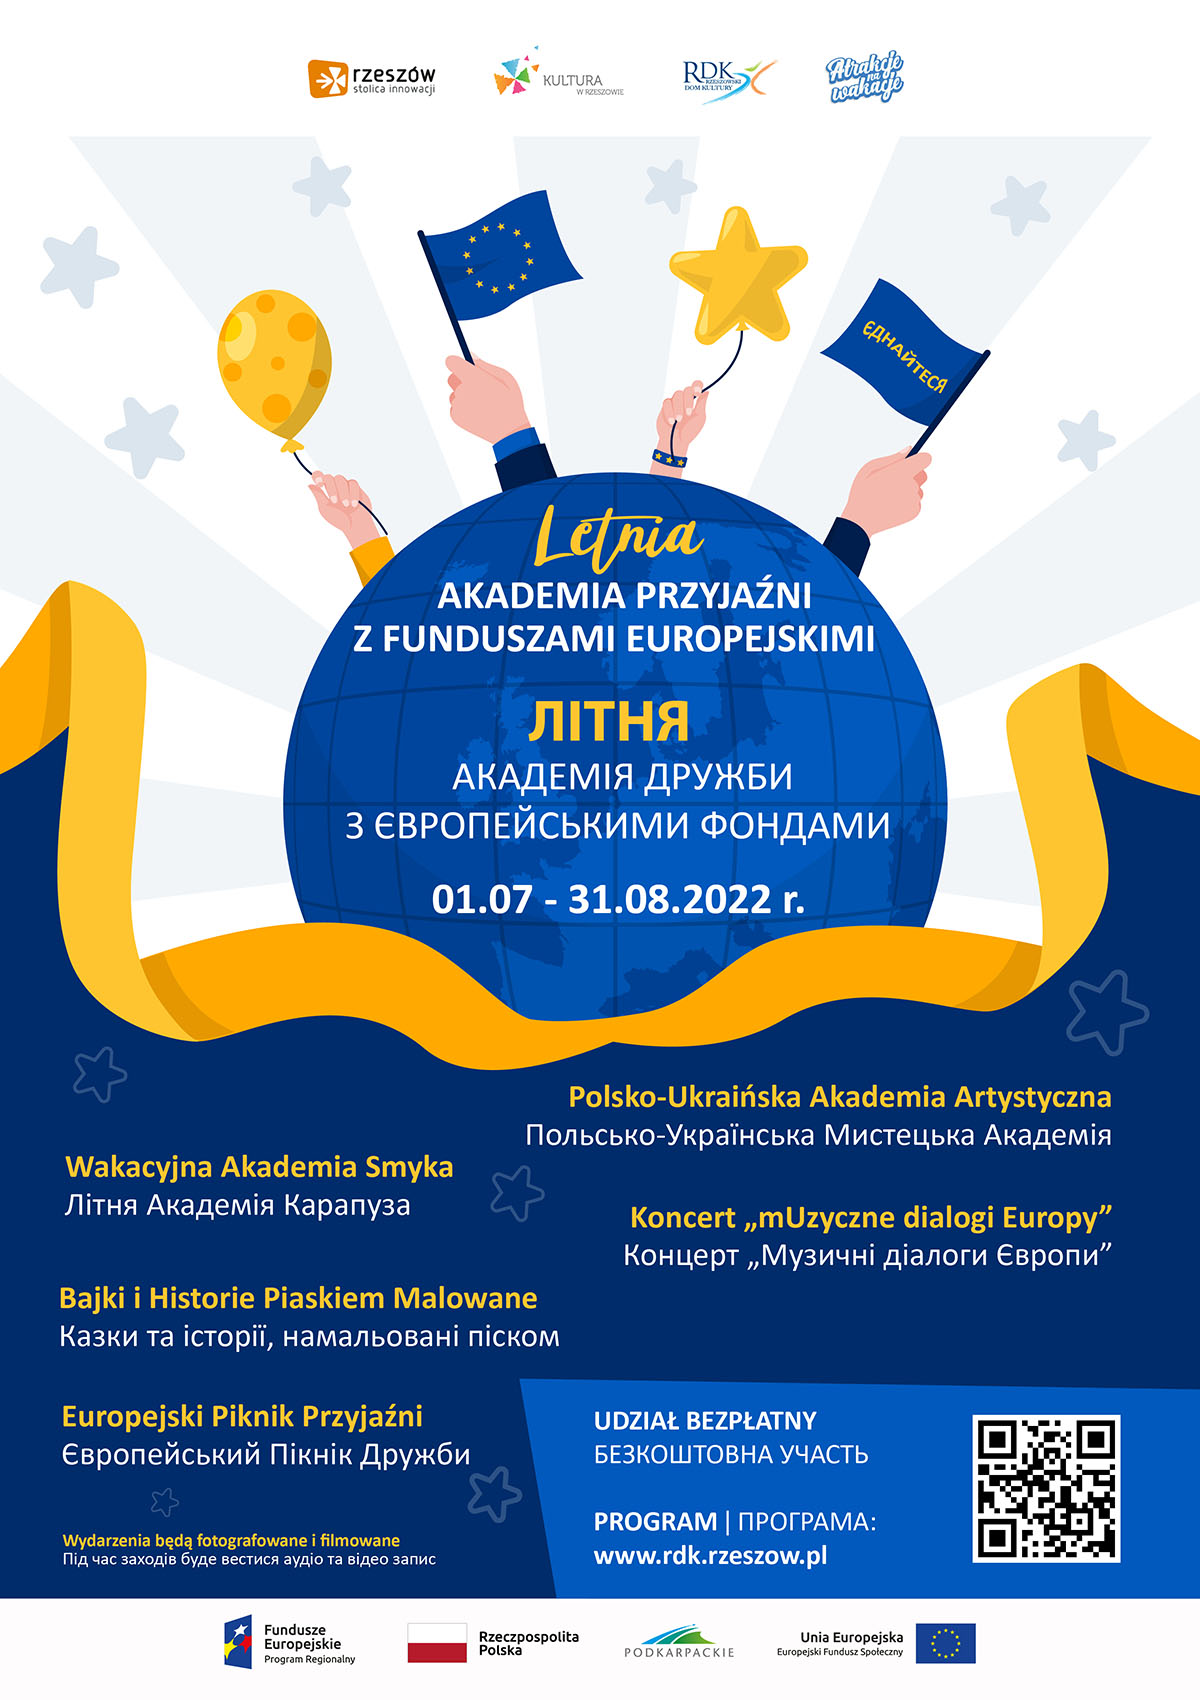 Plakat wydarzenia w kolorystyce biało-niebiesko-żółtej, opracowany w języku polskim i ukraińskim. Wszystkie treści zawarte na plakacie znajdują się w treści artykułu